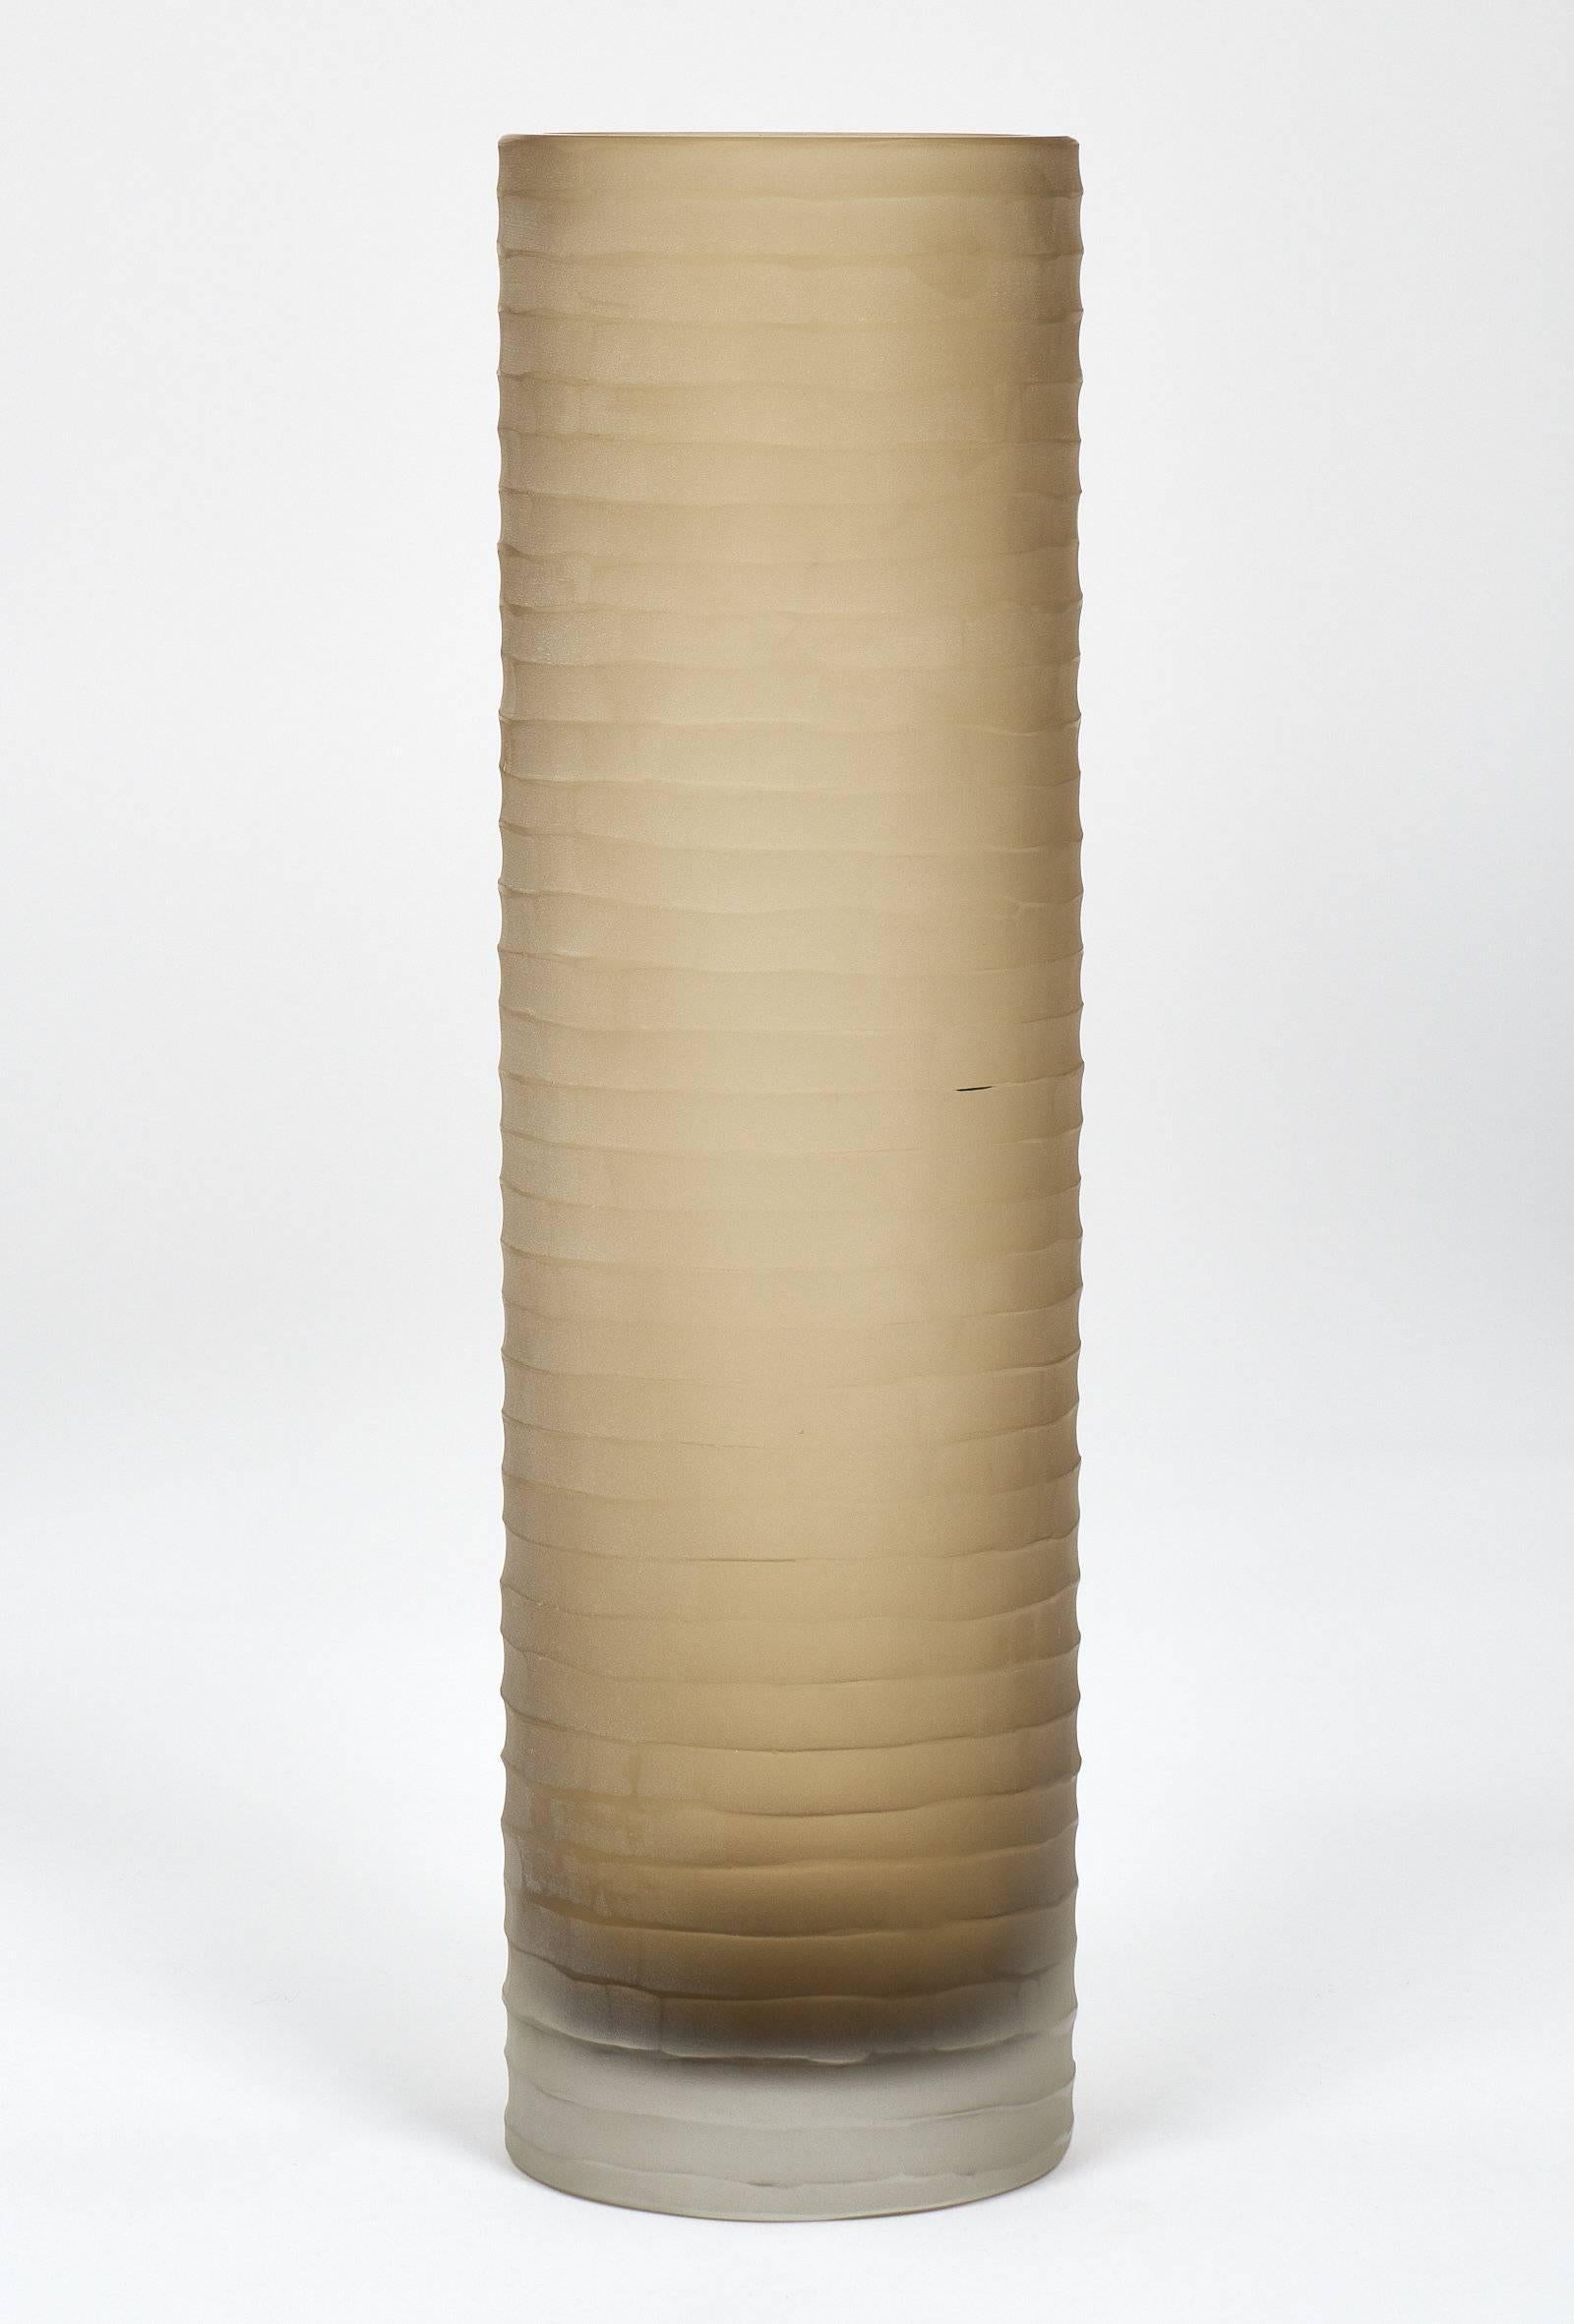 ‘Battuto’ Smoked Murano Glass Vases For Sale 2